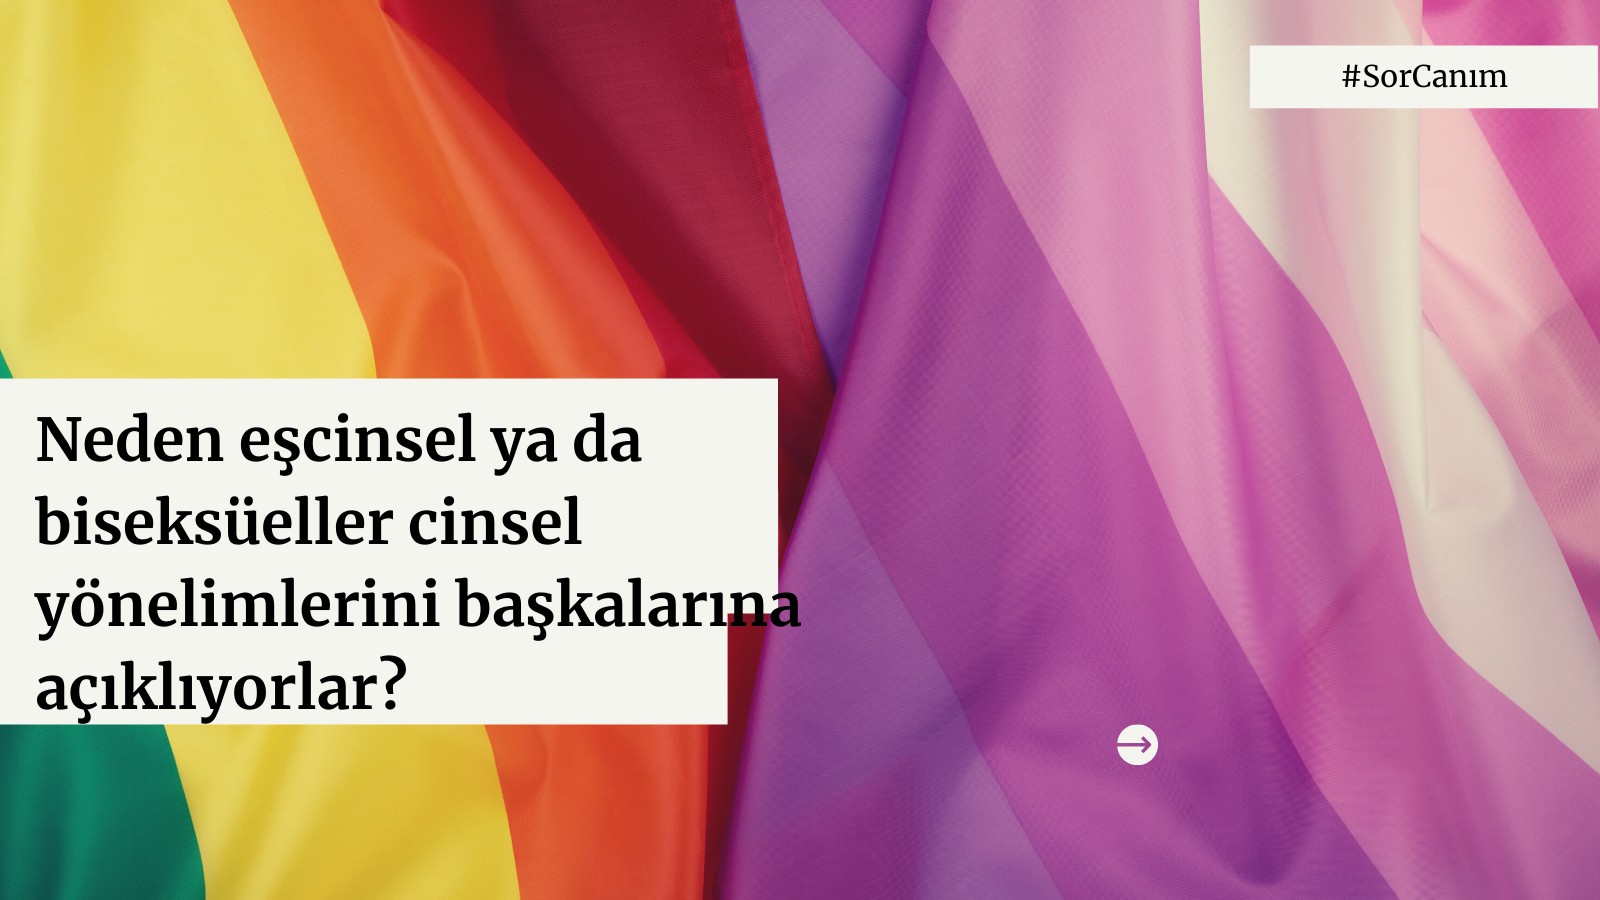 Sor Canım: Neden eşcinsel ya da biseksüeller cinsel yönelimlerini başkalarına açıklıyorlar? | Kaos GL - LGBTİ+ Haber Portalı